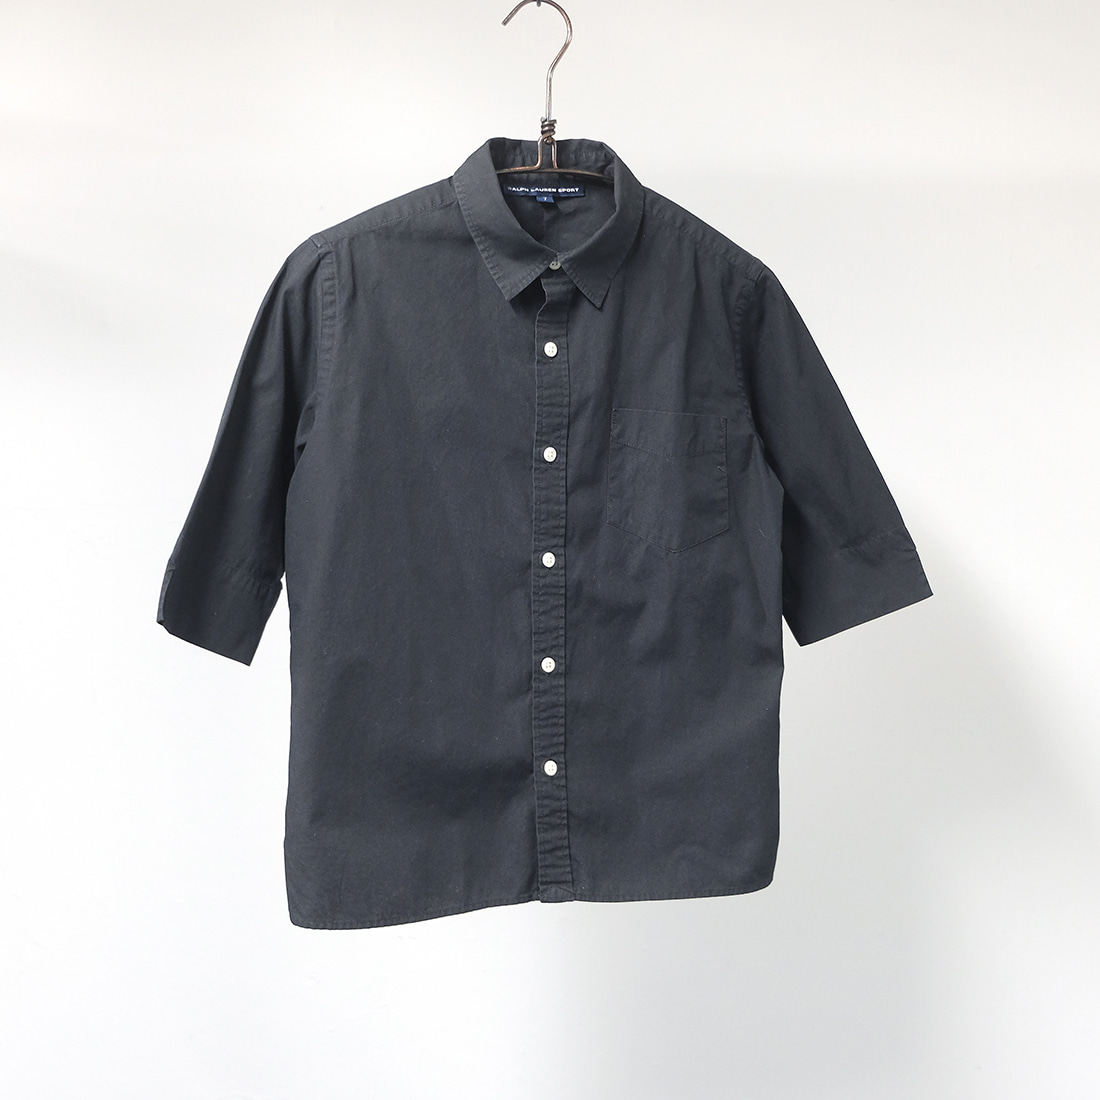 랄프로렌 / Made in japan  Ralph lauren short shirt